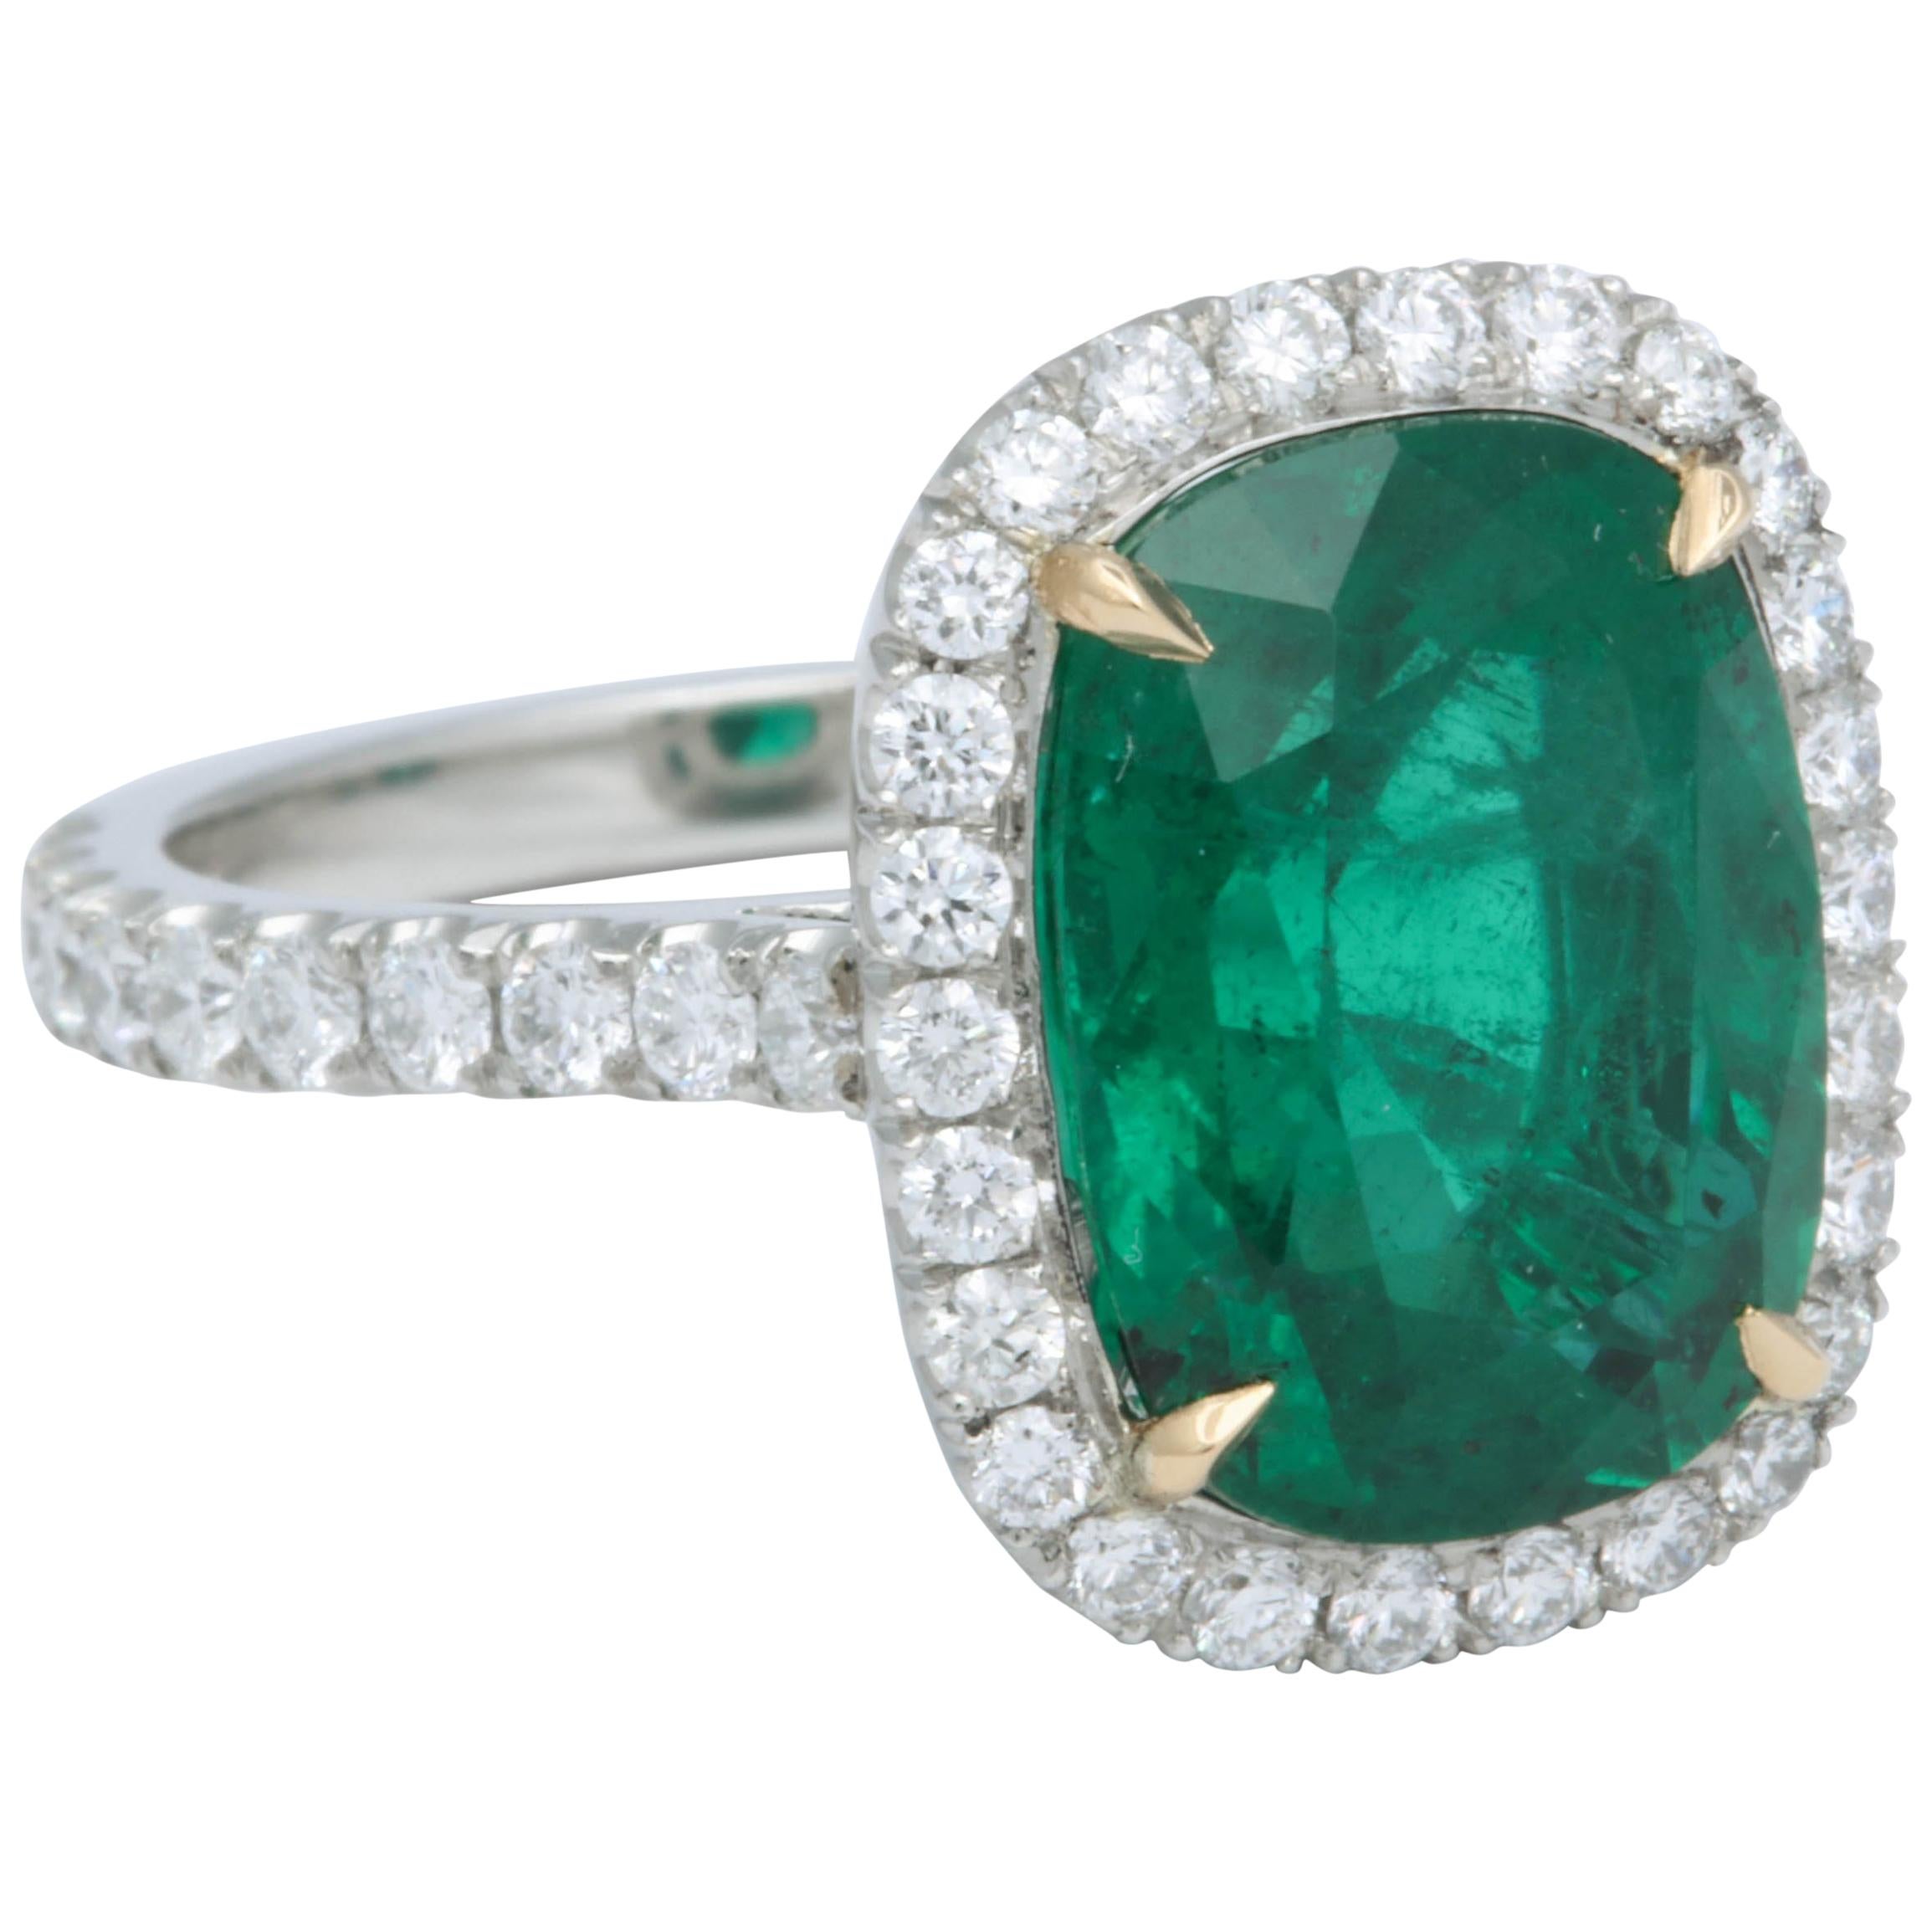 5 Karat grüner Smaragd im Kissenschliff Diamant-Halo-Ring GIA zertifiziert ohne Öl